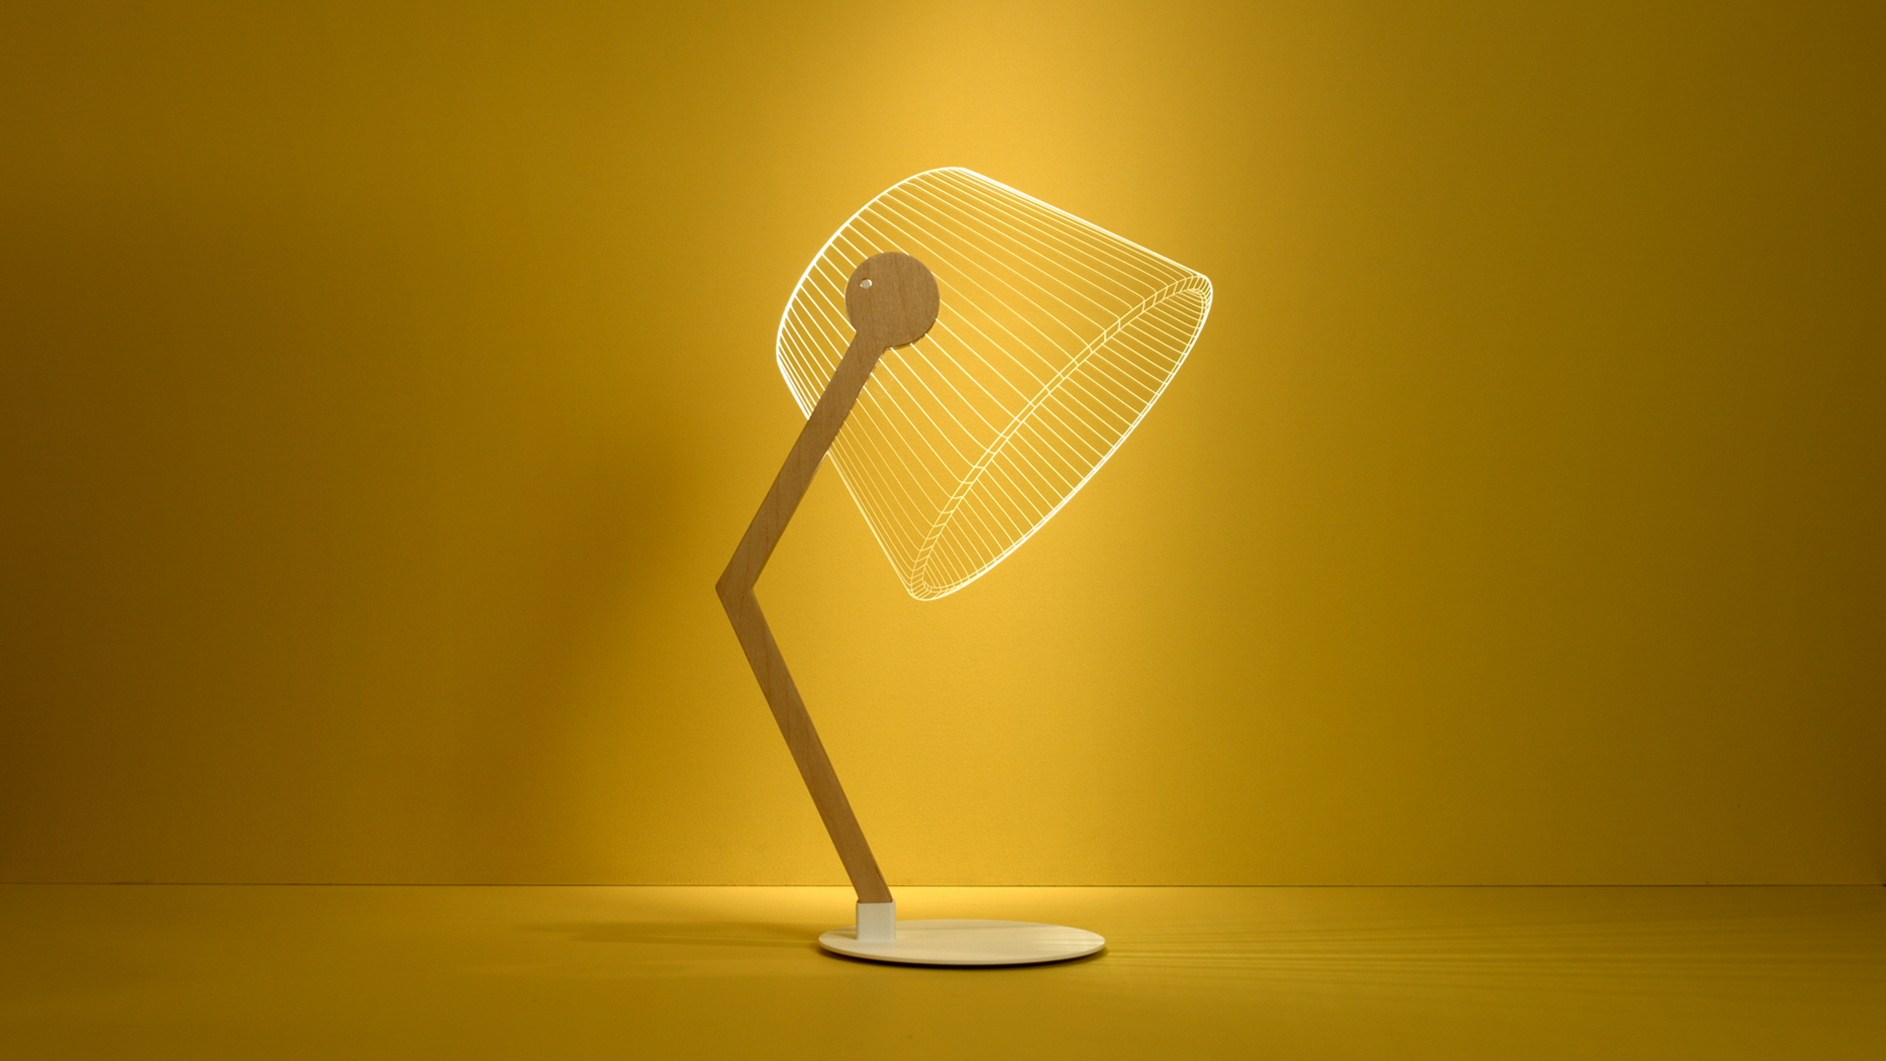 ZIGGi Lamp by Studio Cheha